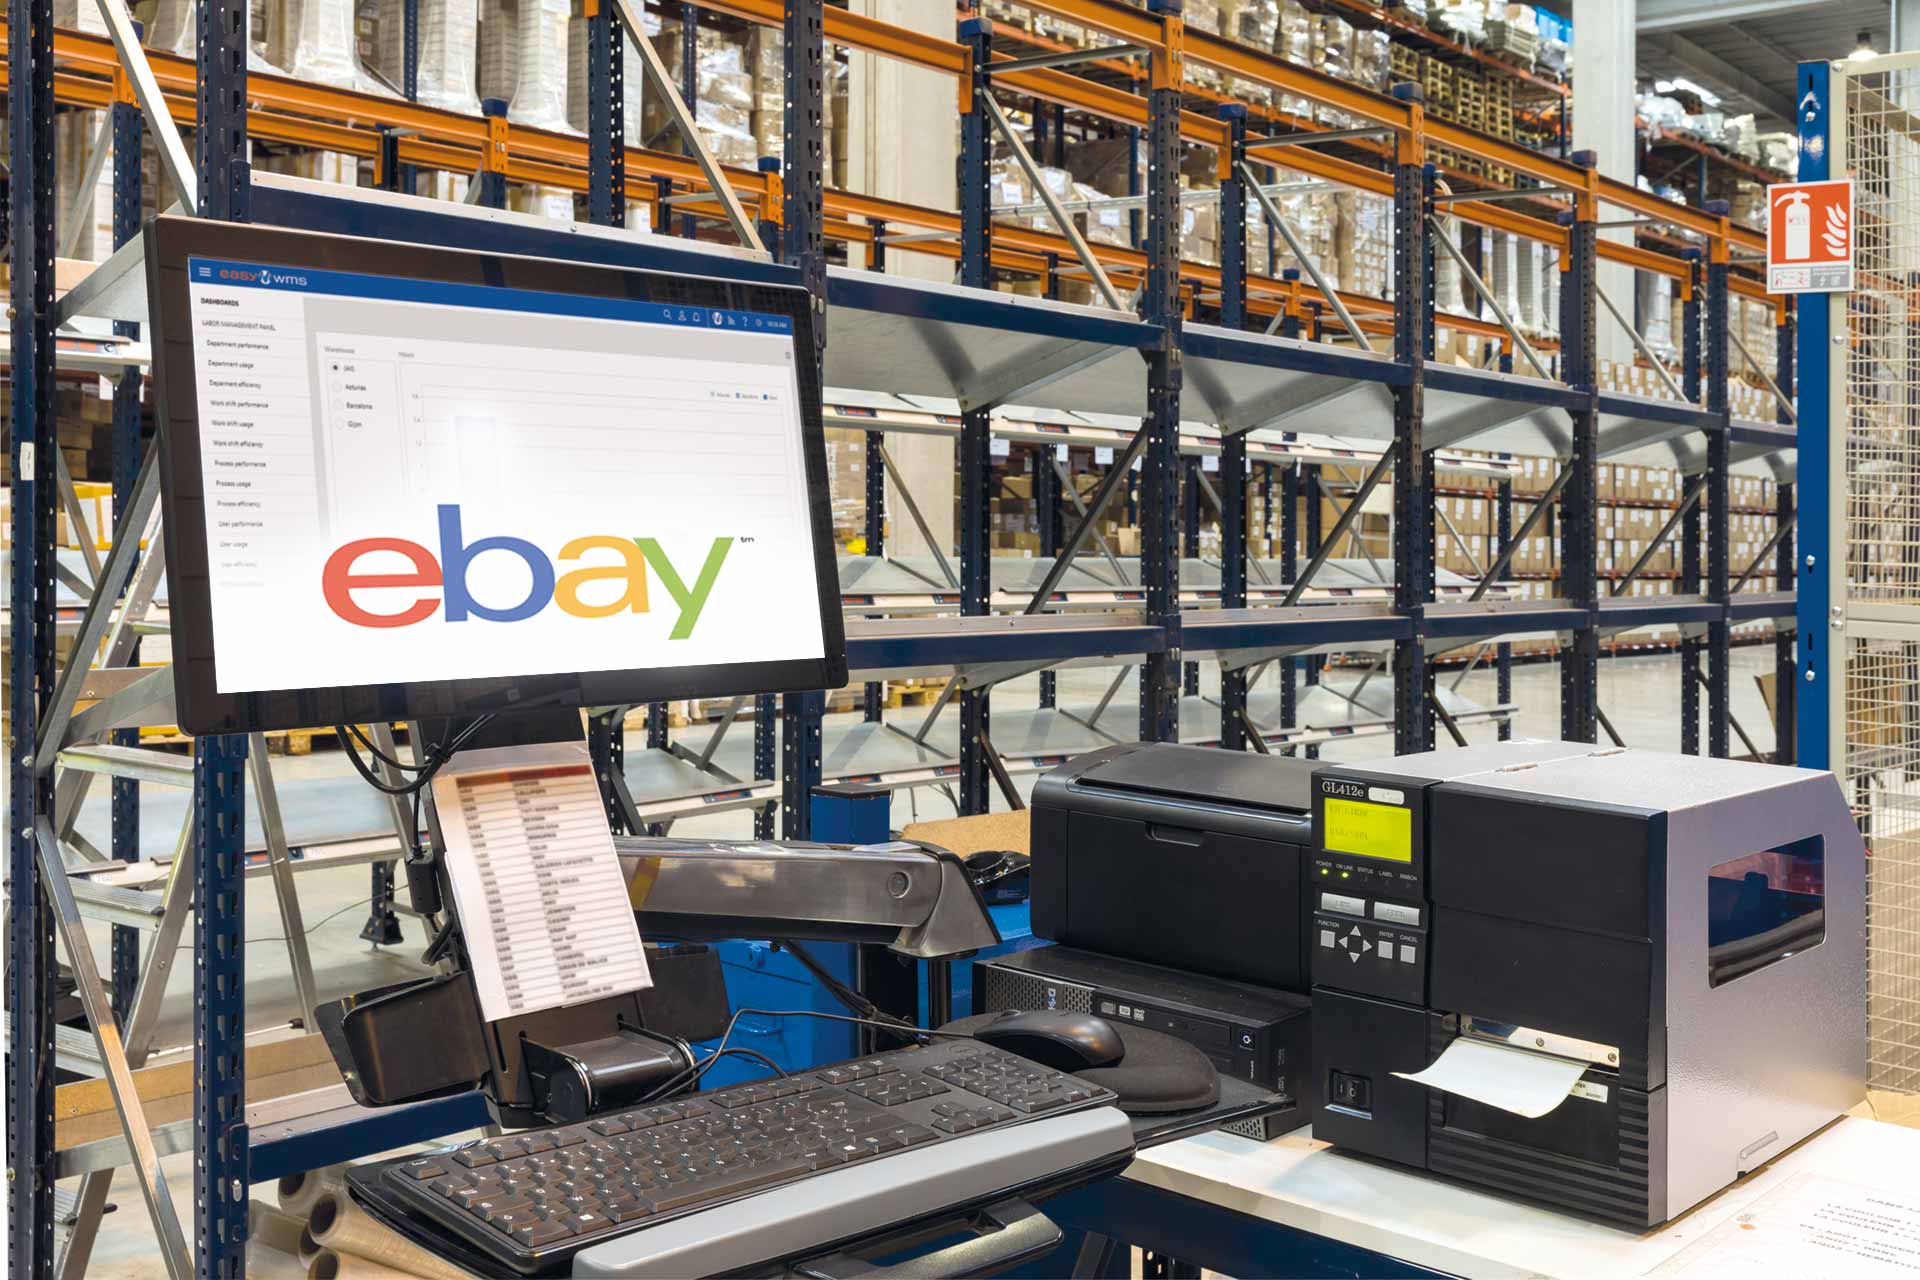 ebay-Software für den Bestand: Synchronisieren Sie eBay mit dem tatsächlichen Bestand in Ihrem Lager